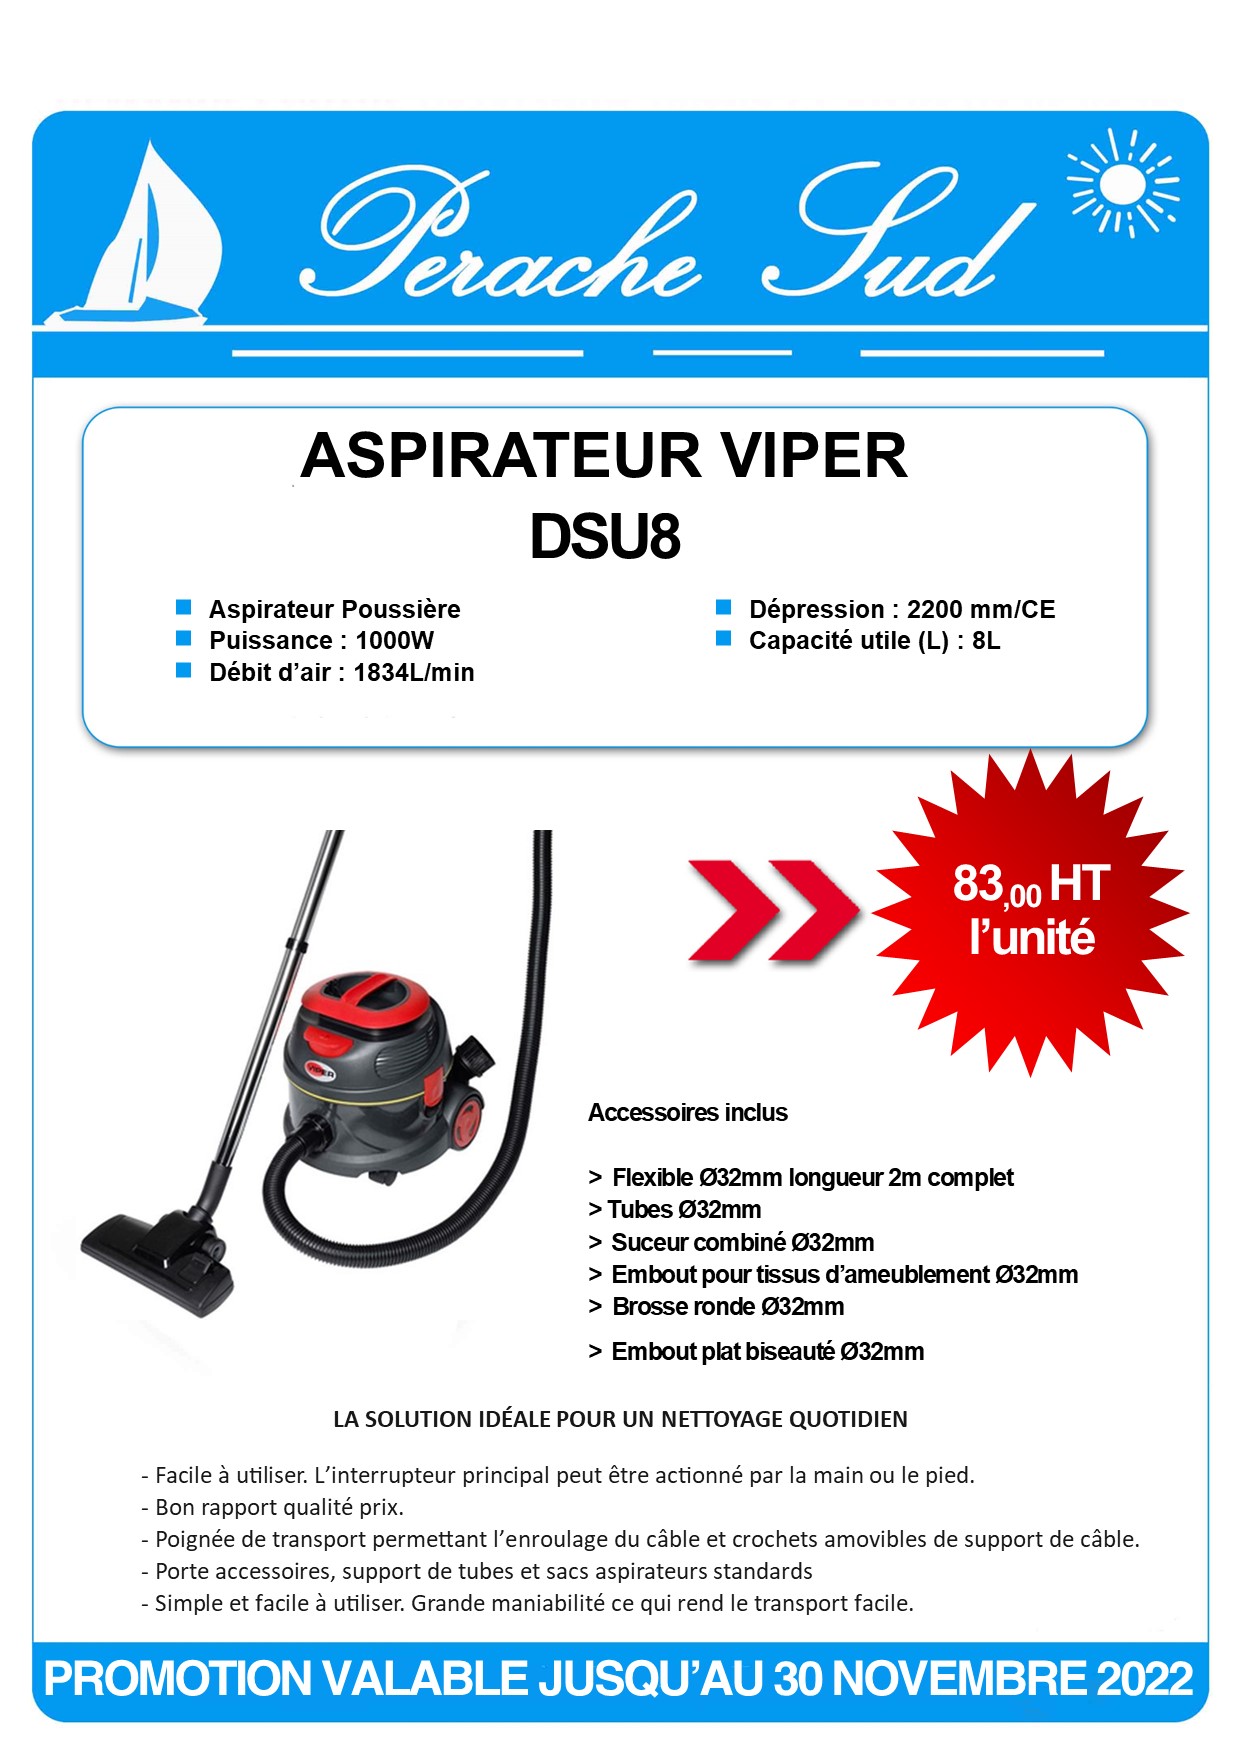 Promotion : Aspirateur Viper DSU8